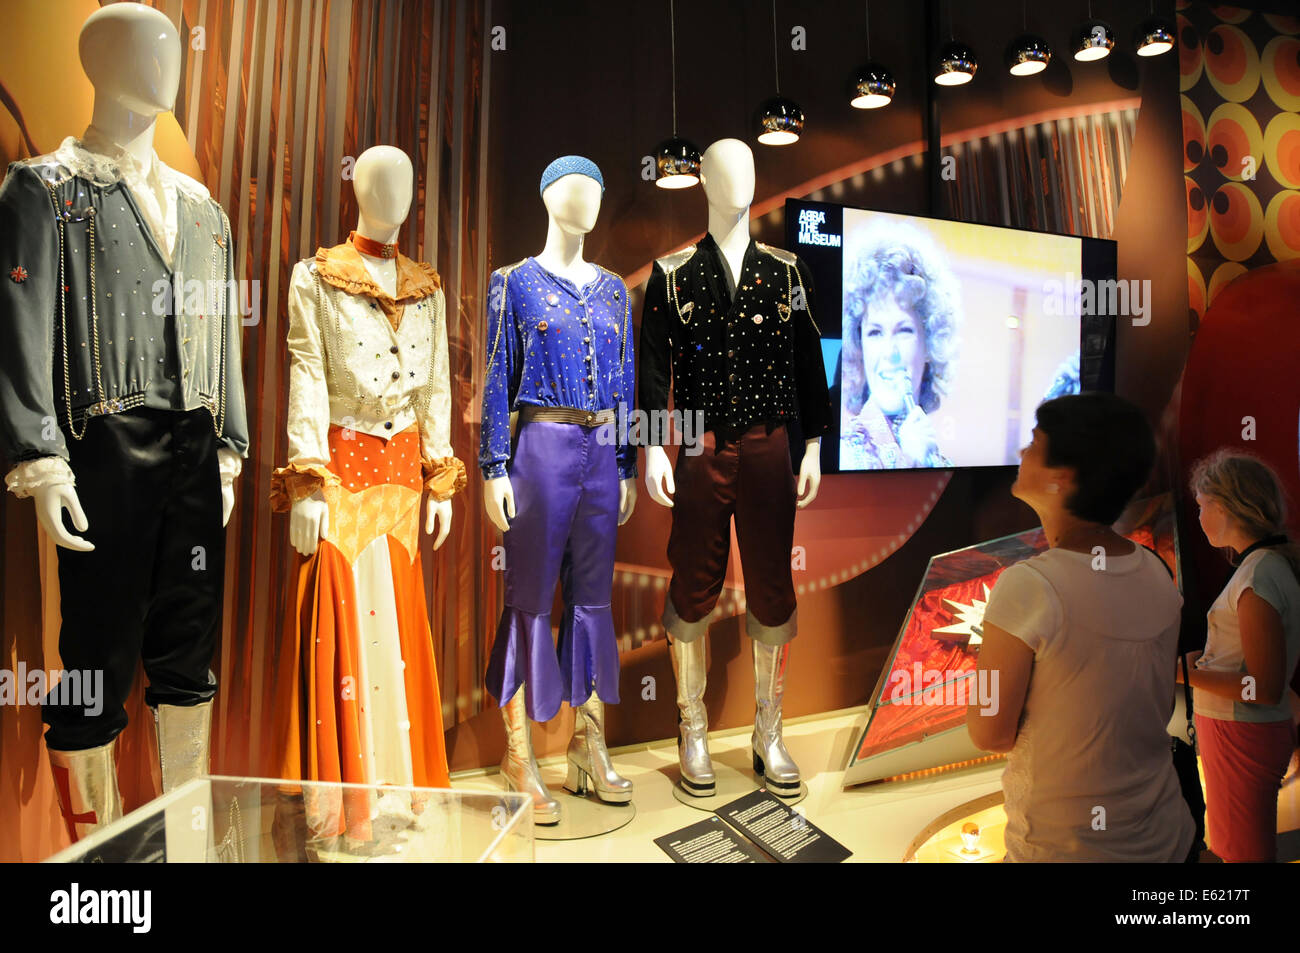 ABBA Il Museo è una mostra interattiva sulla pop-gruppo ABBA che ha aperto a Stoccolma in Svezia nel maggio 2013. Foto Stock